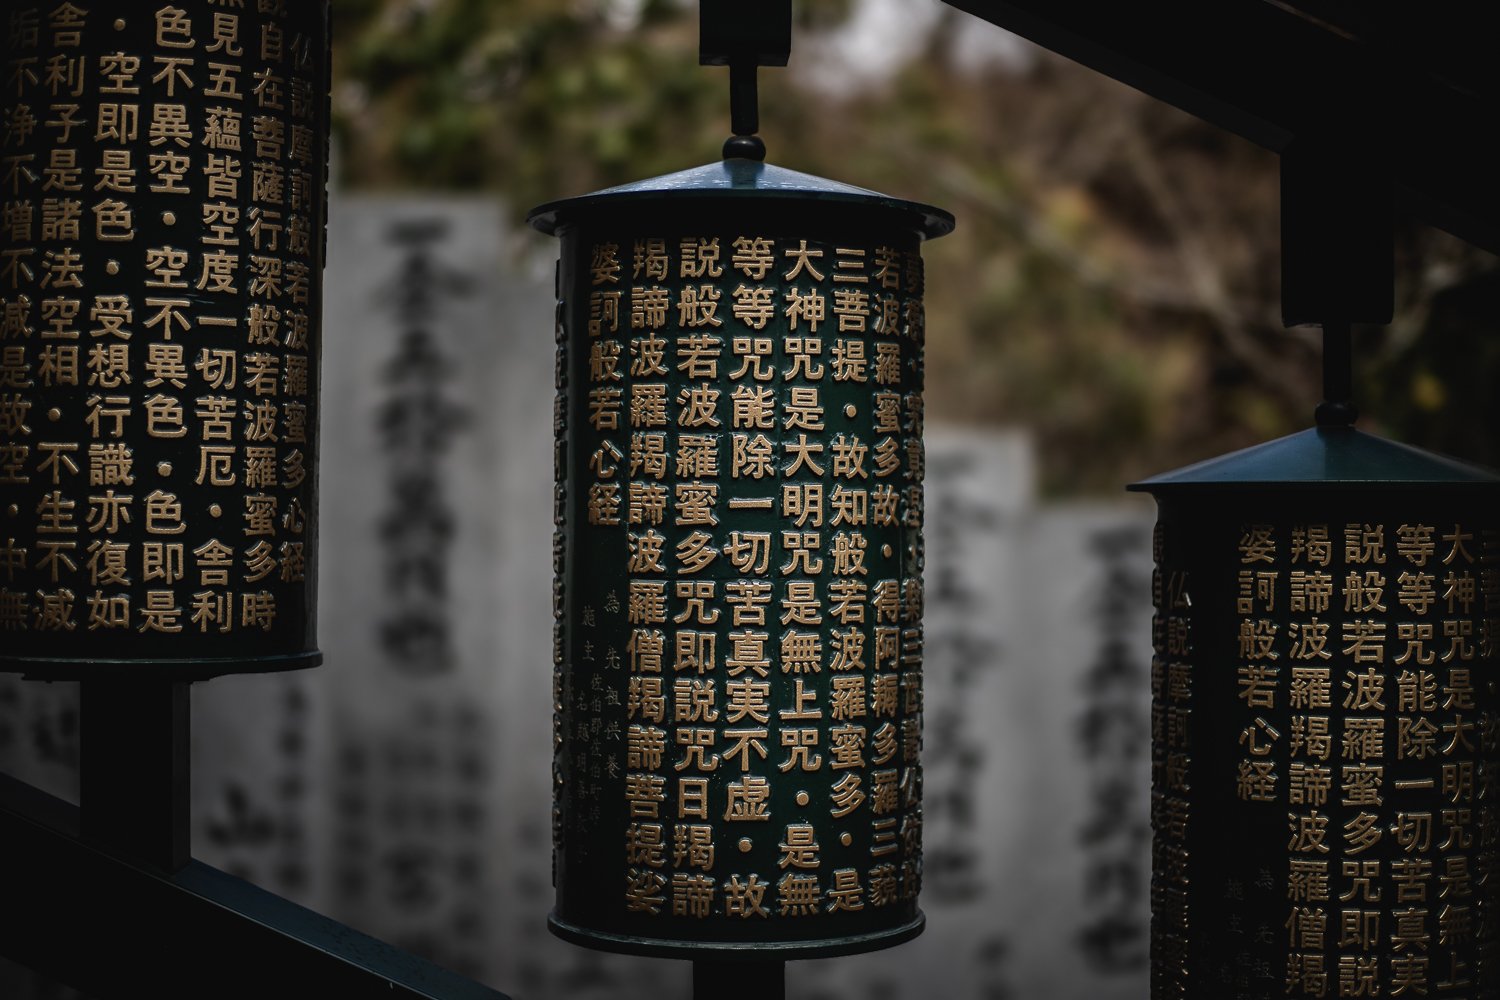 Des moulins à prière : de gros cylindres verts recouverts de symboles (probablement en chinois)